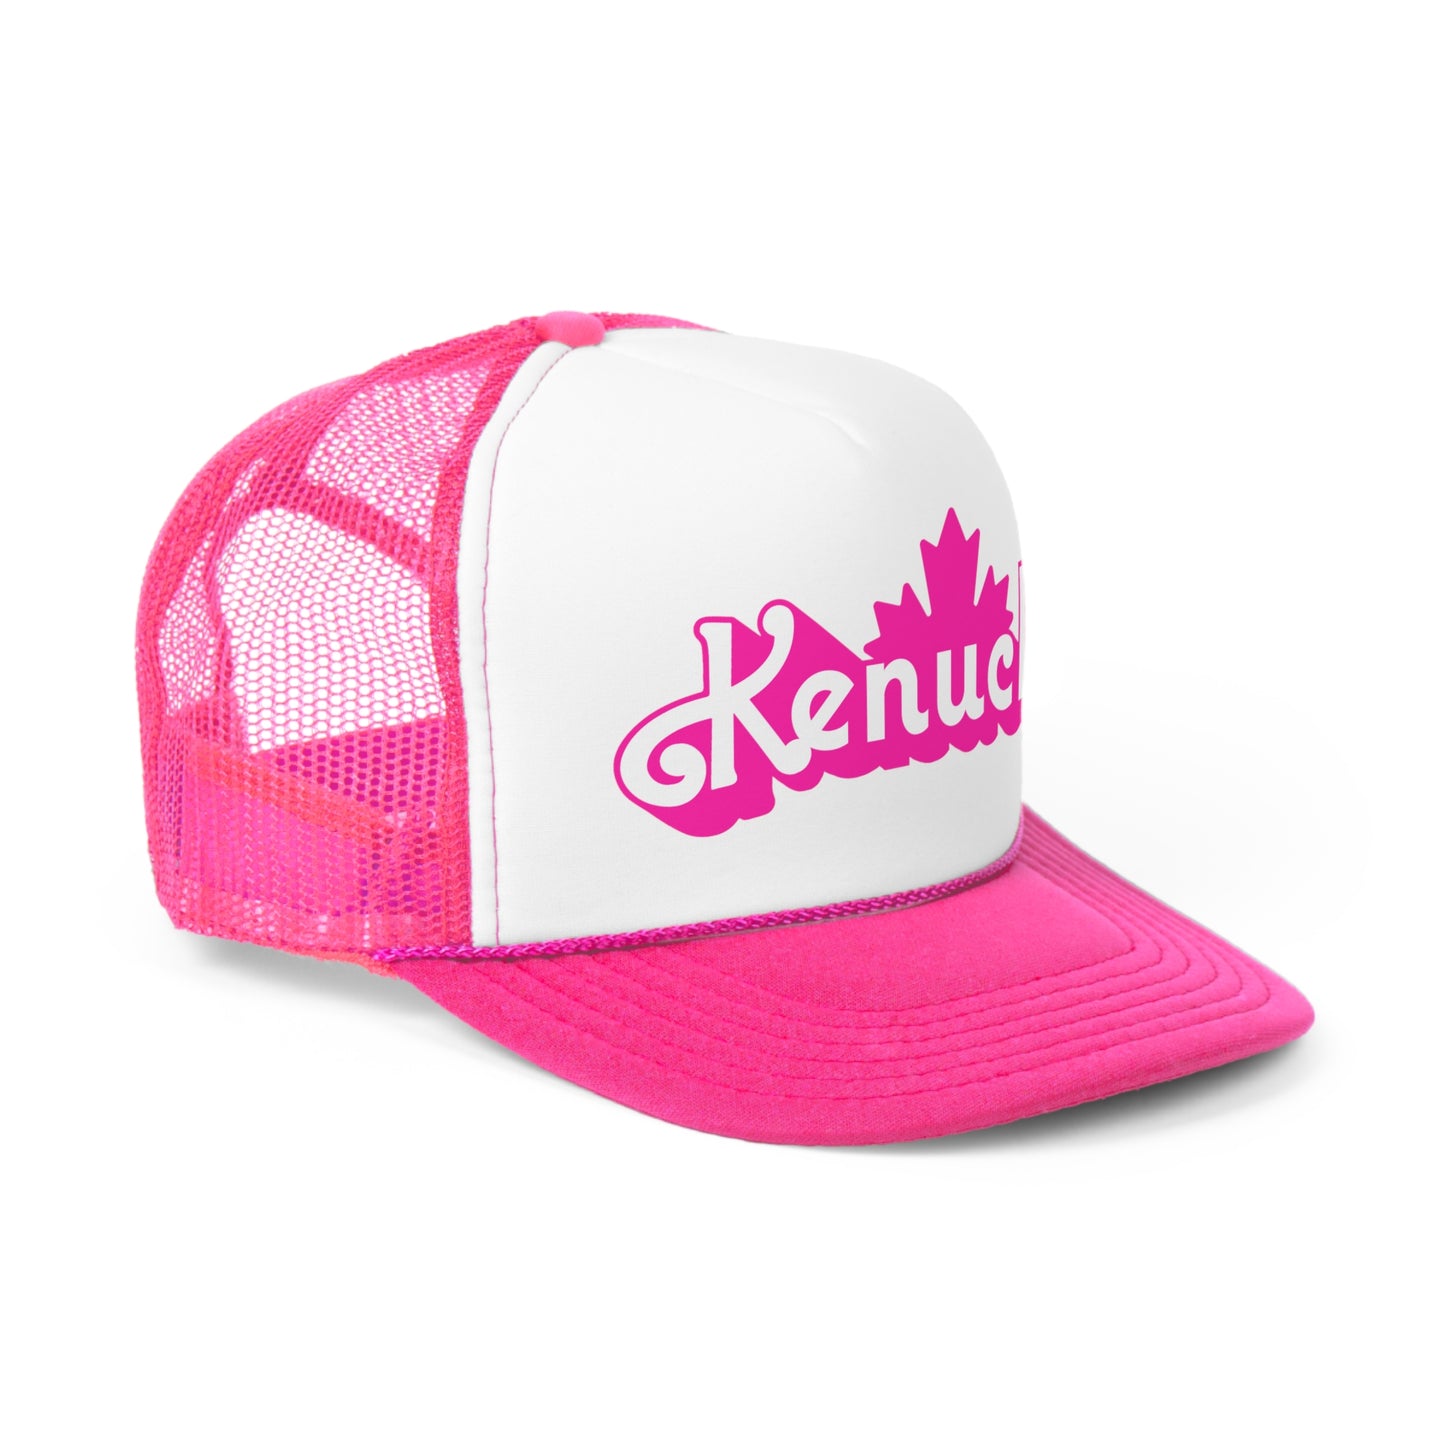 Kenuck Trucker Hat